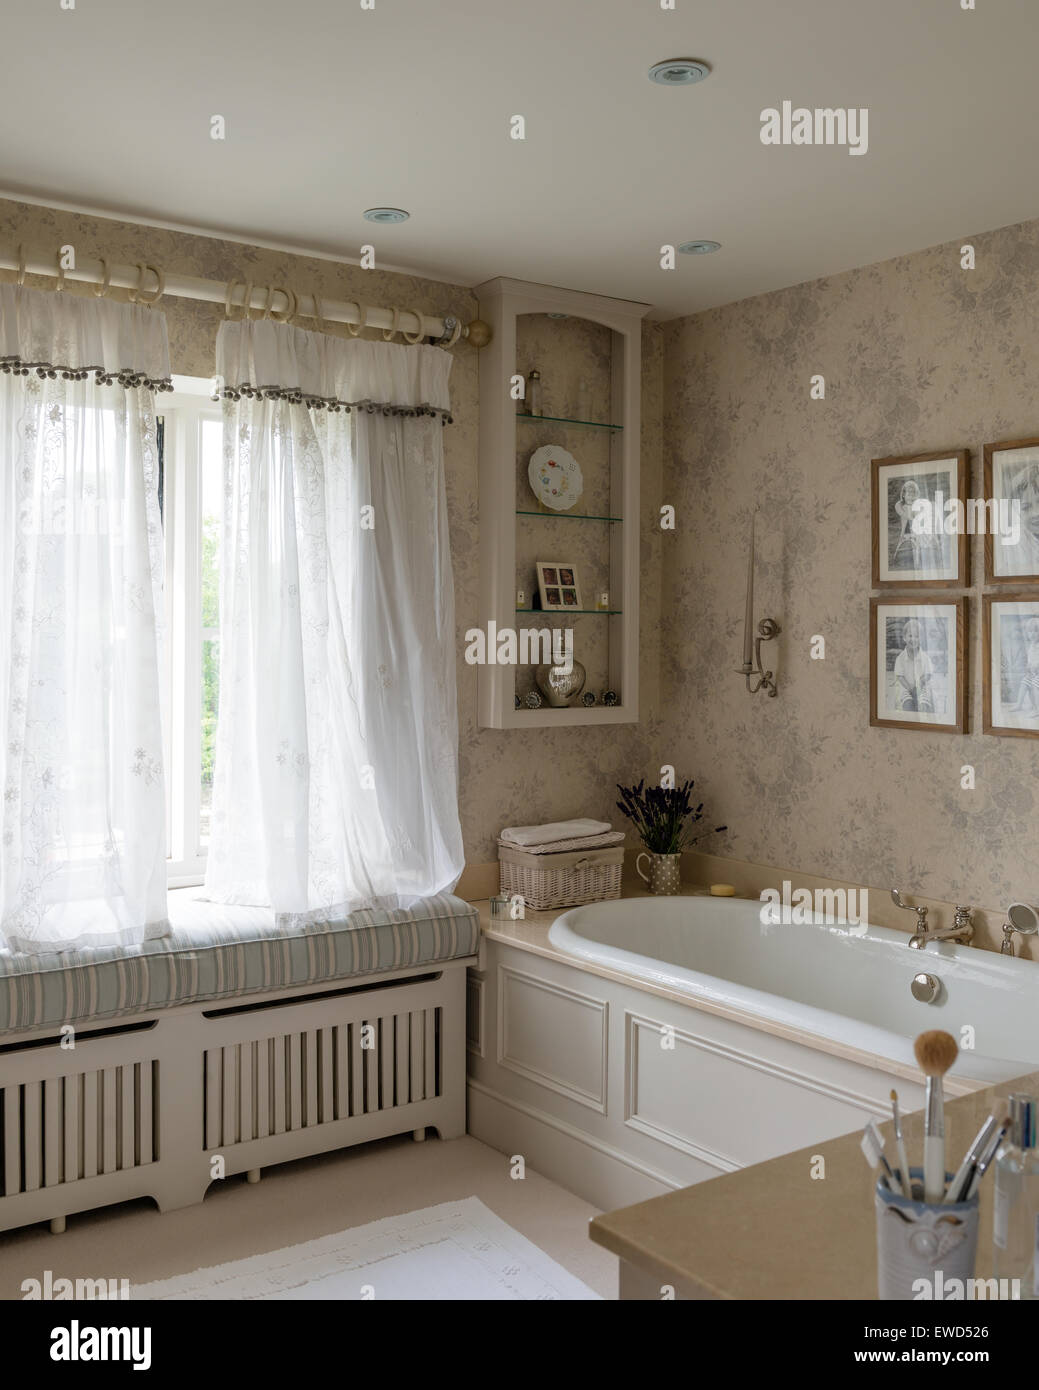 Papel tapiz Rosa gris descolorido por Kate forman en el baño con cortinas de Chelsea textiles Foto de stock